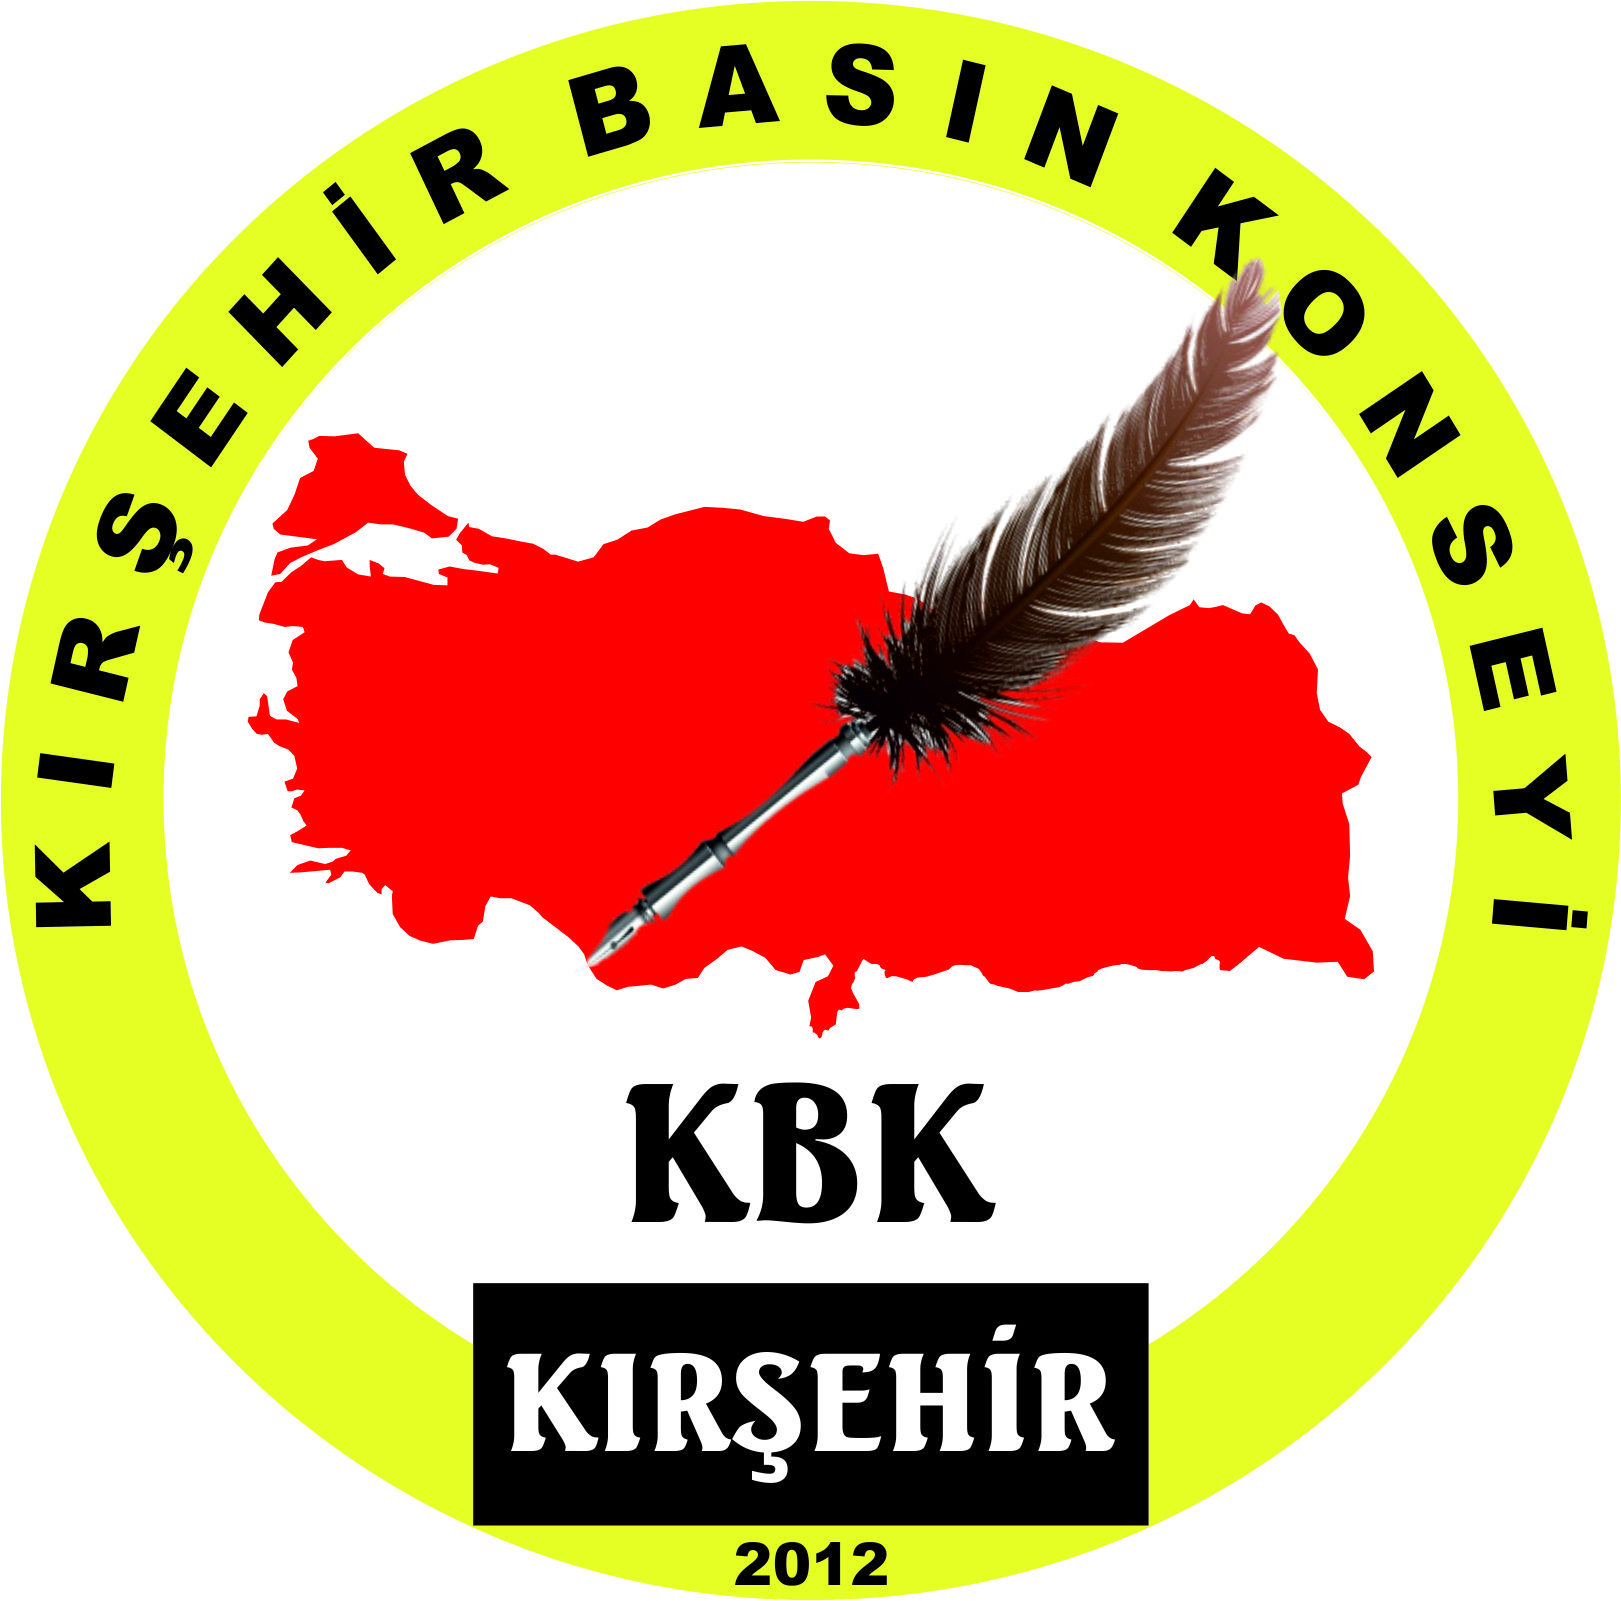 Çalışan Gazeteciler Günü’nde Kırşehir’de Basın Konseyi Medya Ödülleri verecek